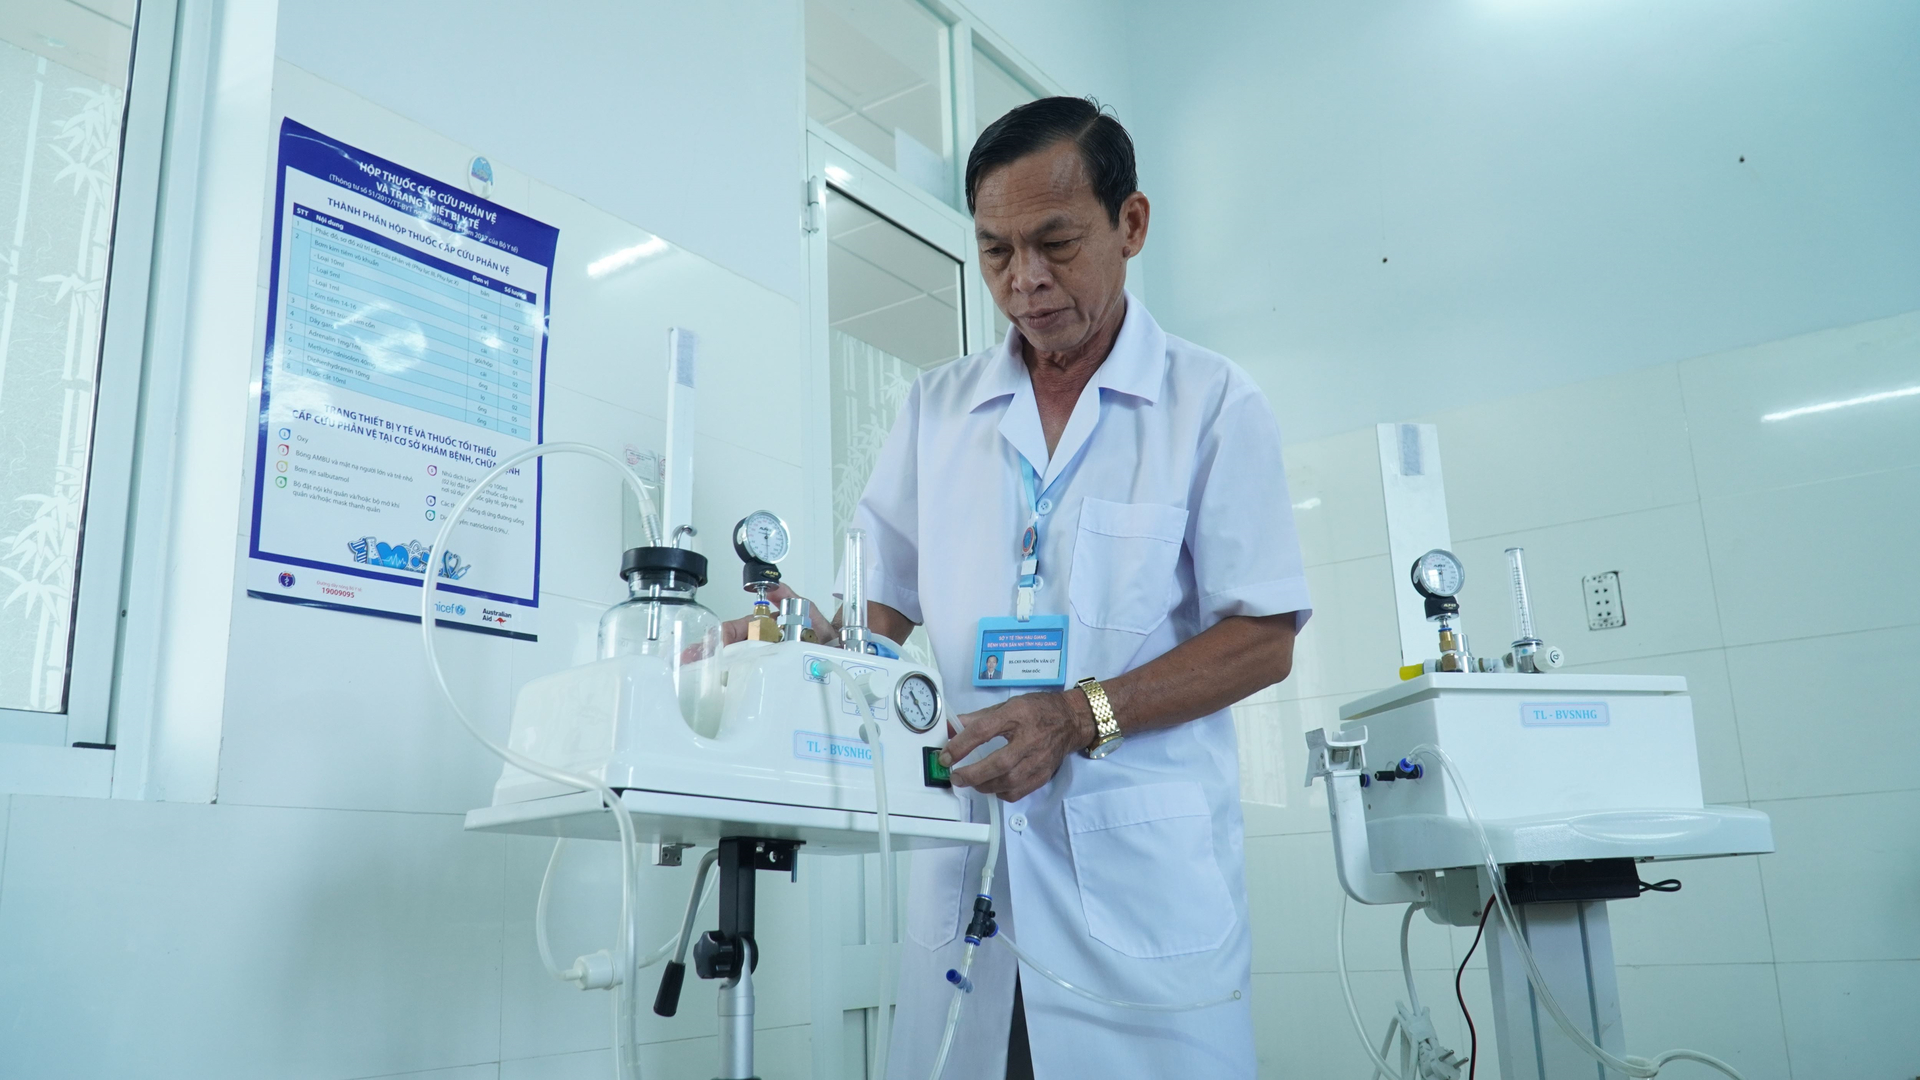 Bác sĩ Nguyễn Văn Út cùng “thiết bị tháo lồng ruột bằng hơi do chính mình sáng chế